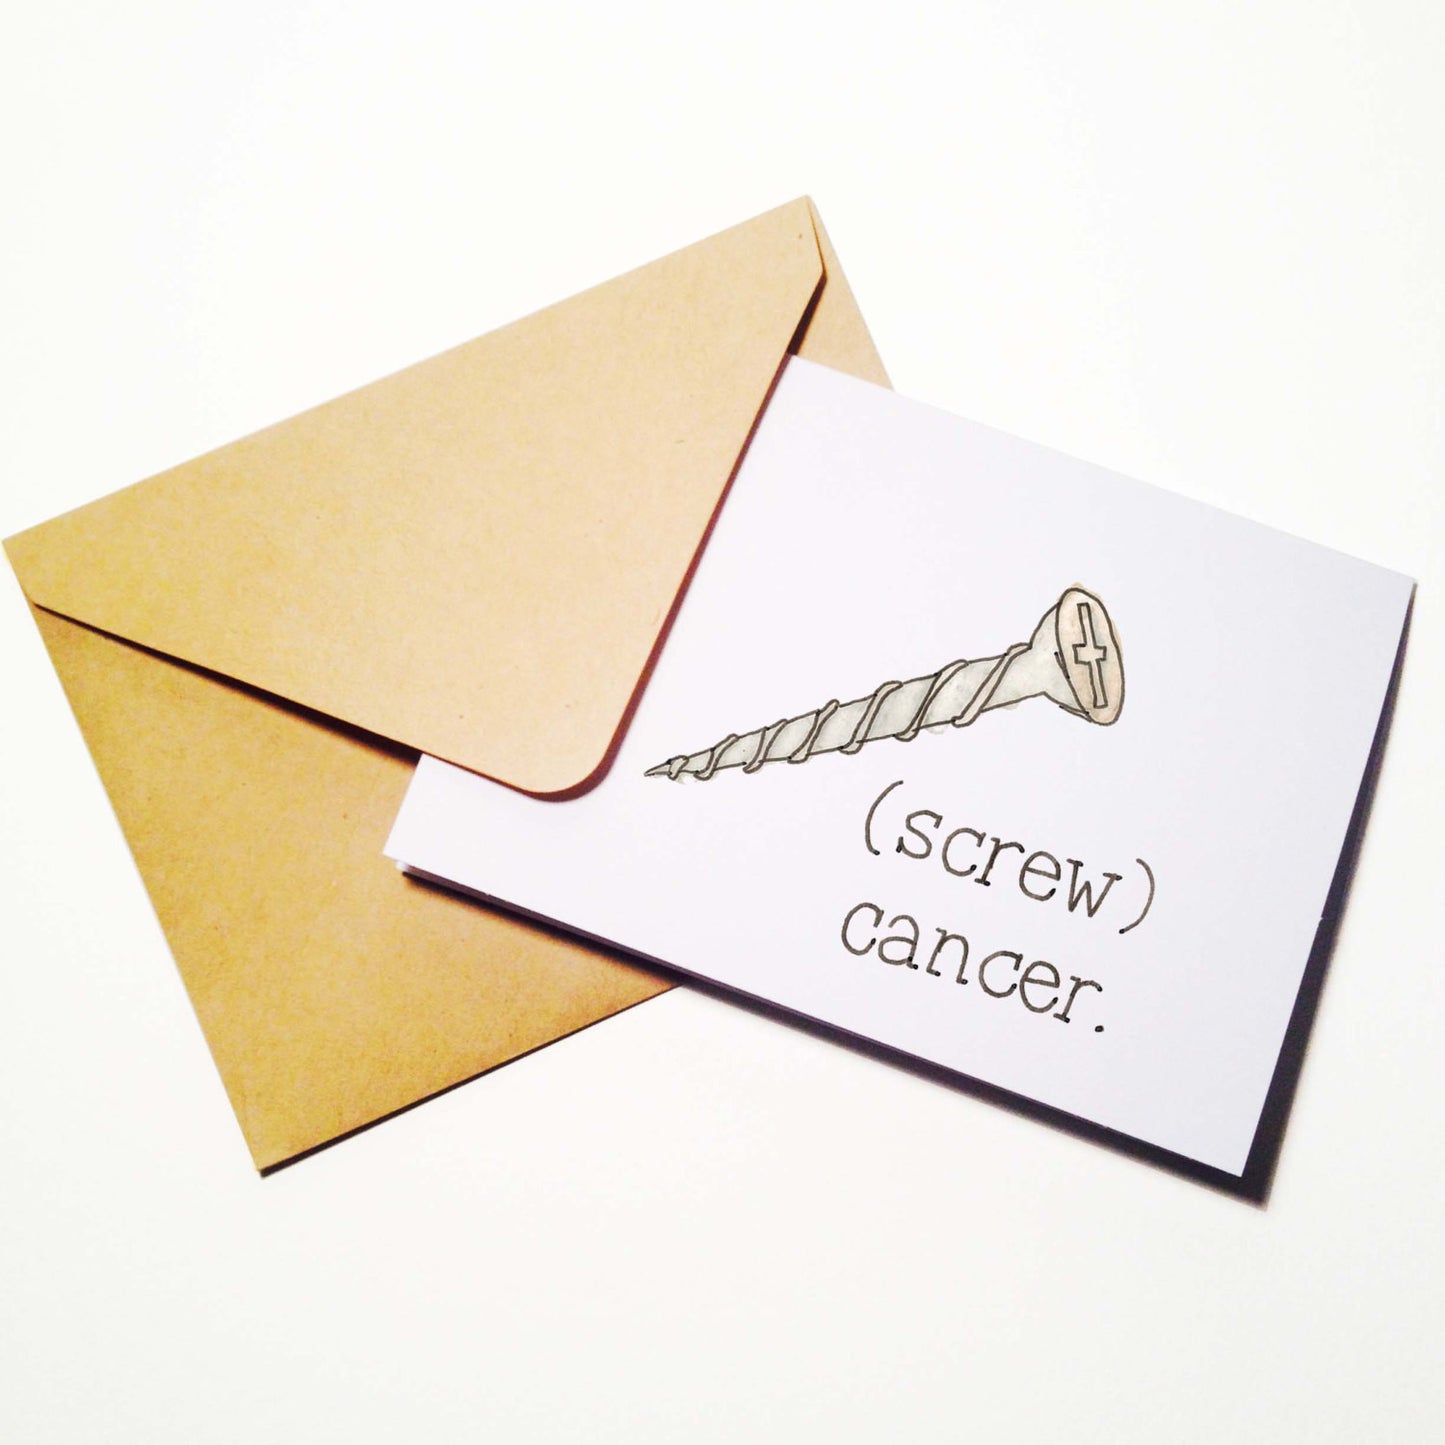 Screw Cancer Survivor Card